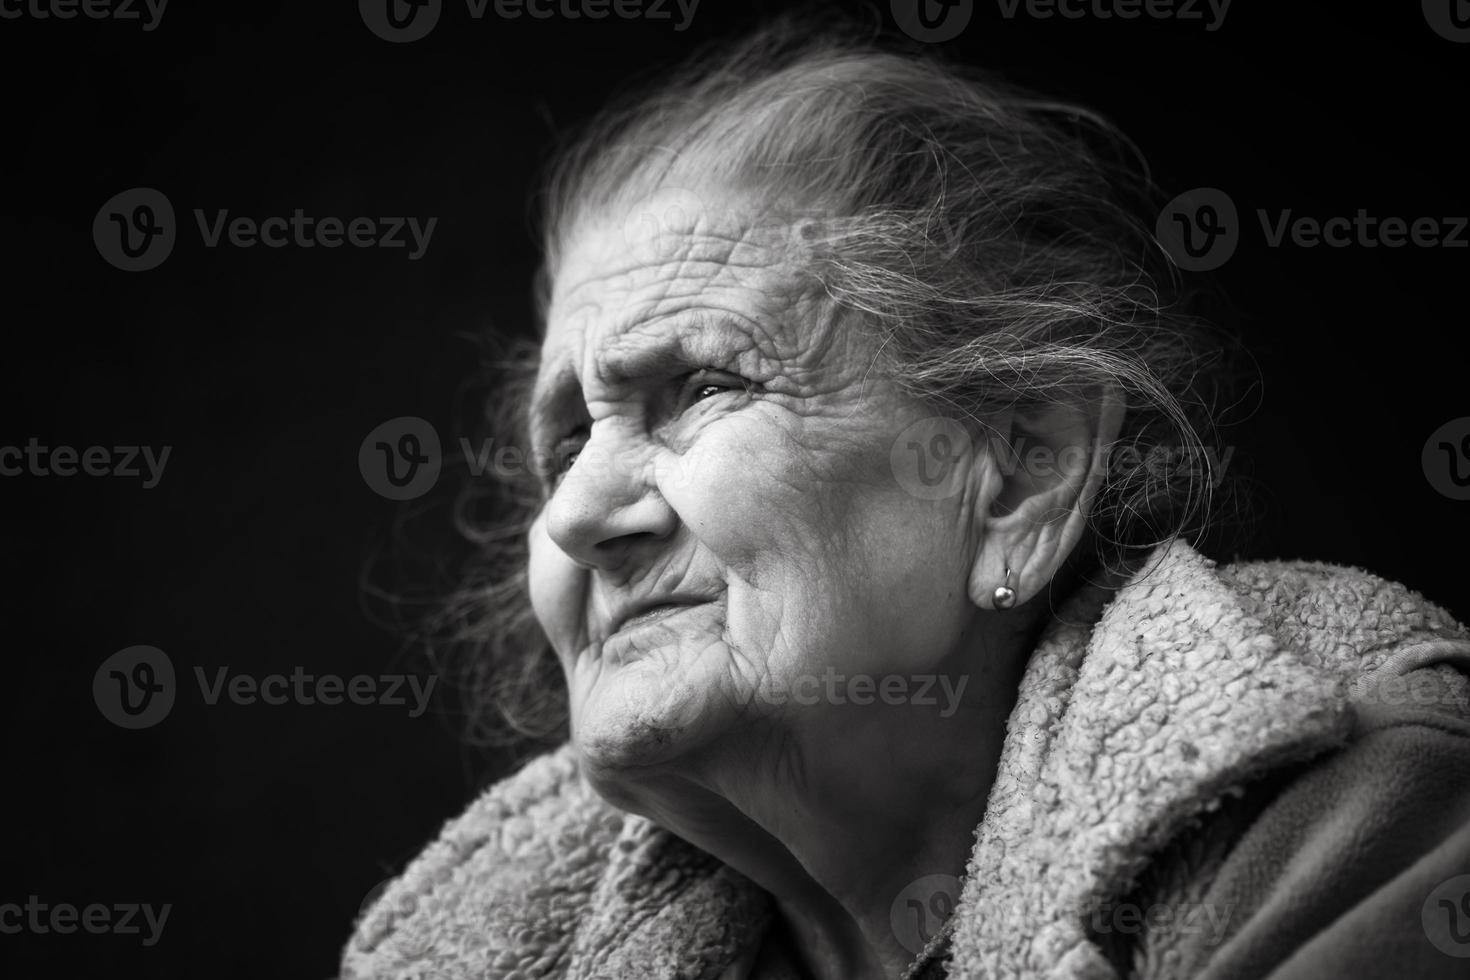 mujer arrugada muy vieja y cansada al aire libre foto